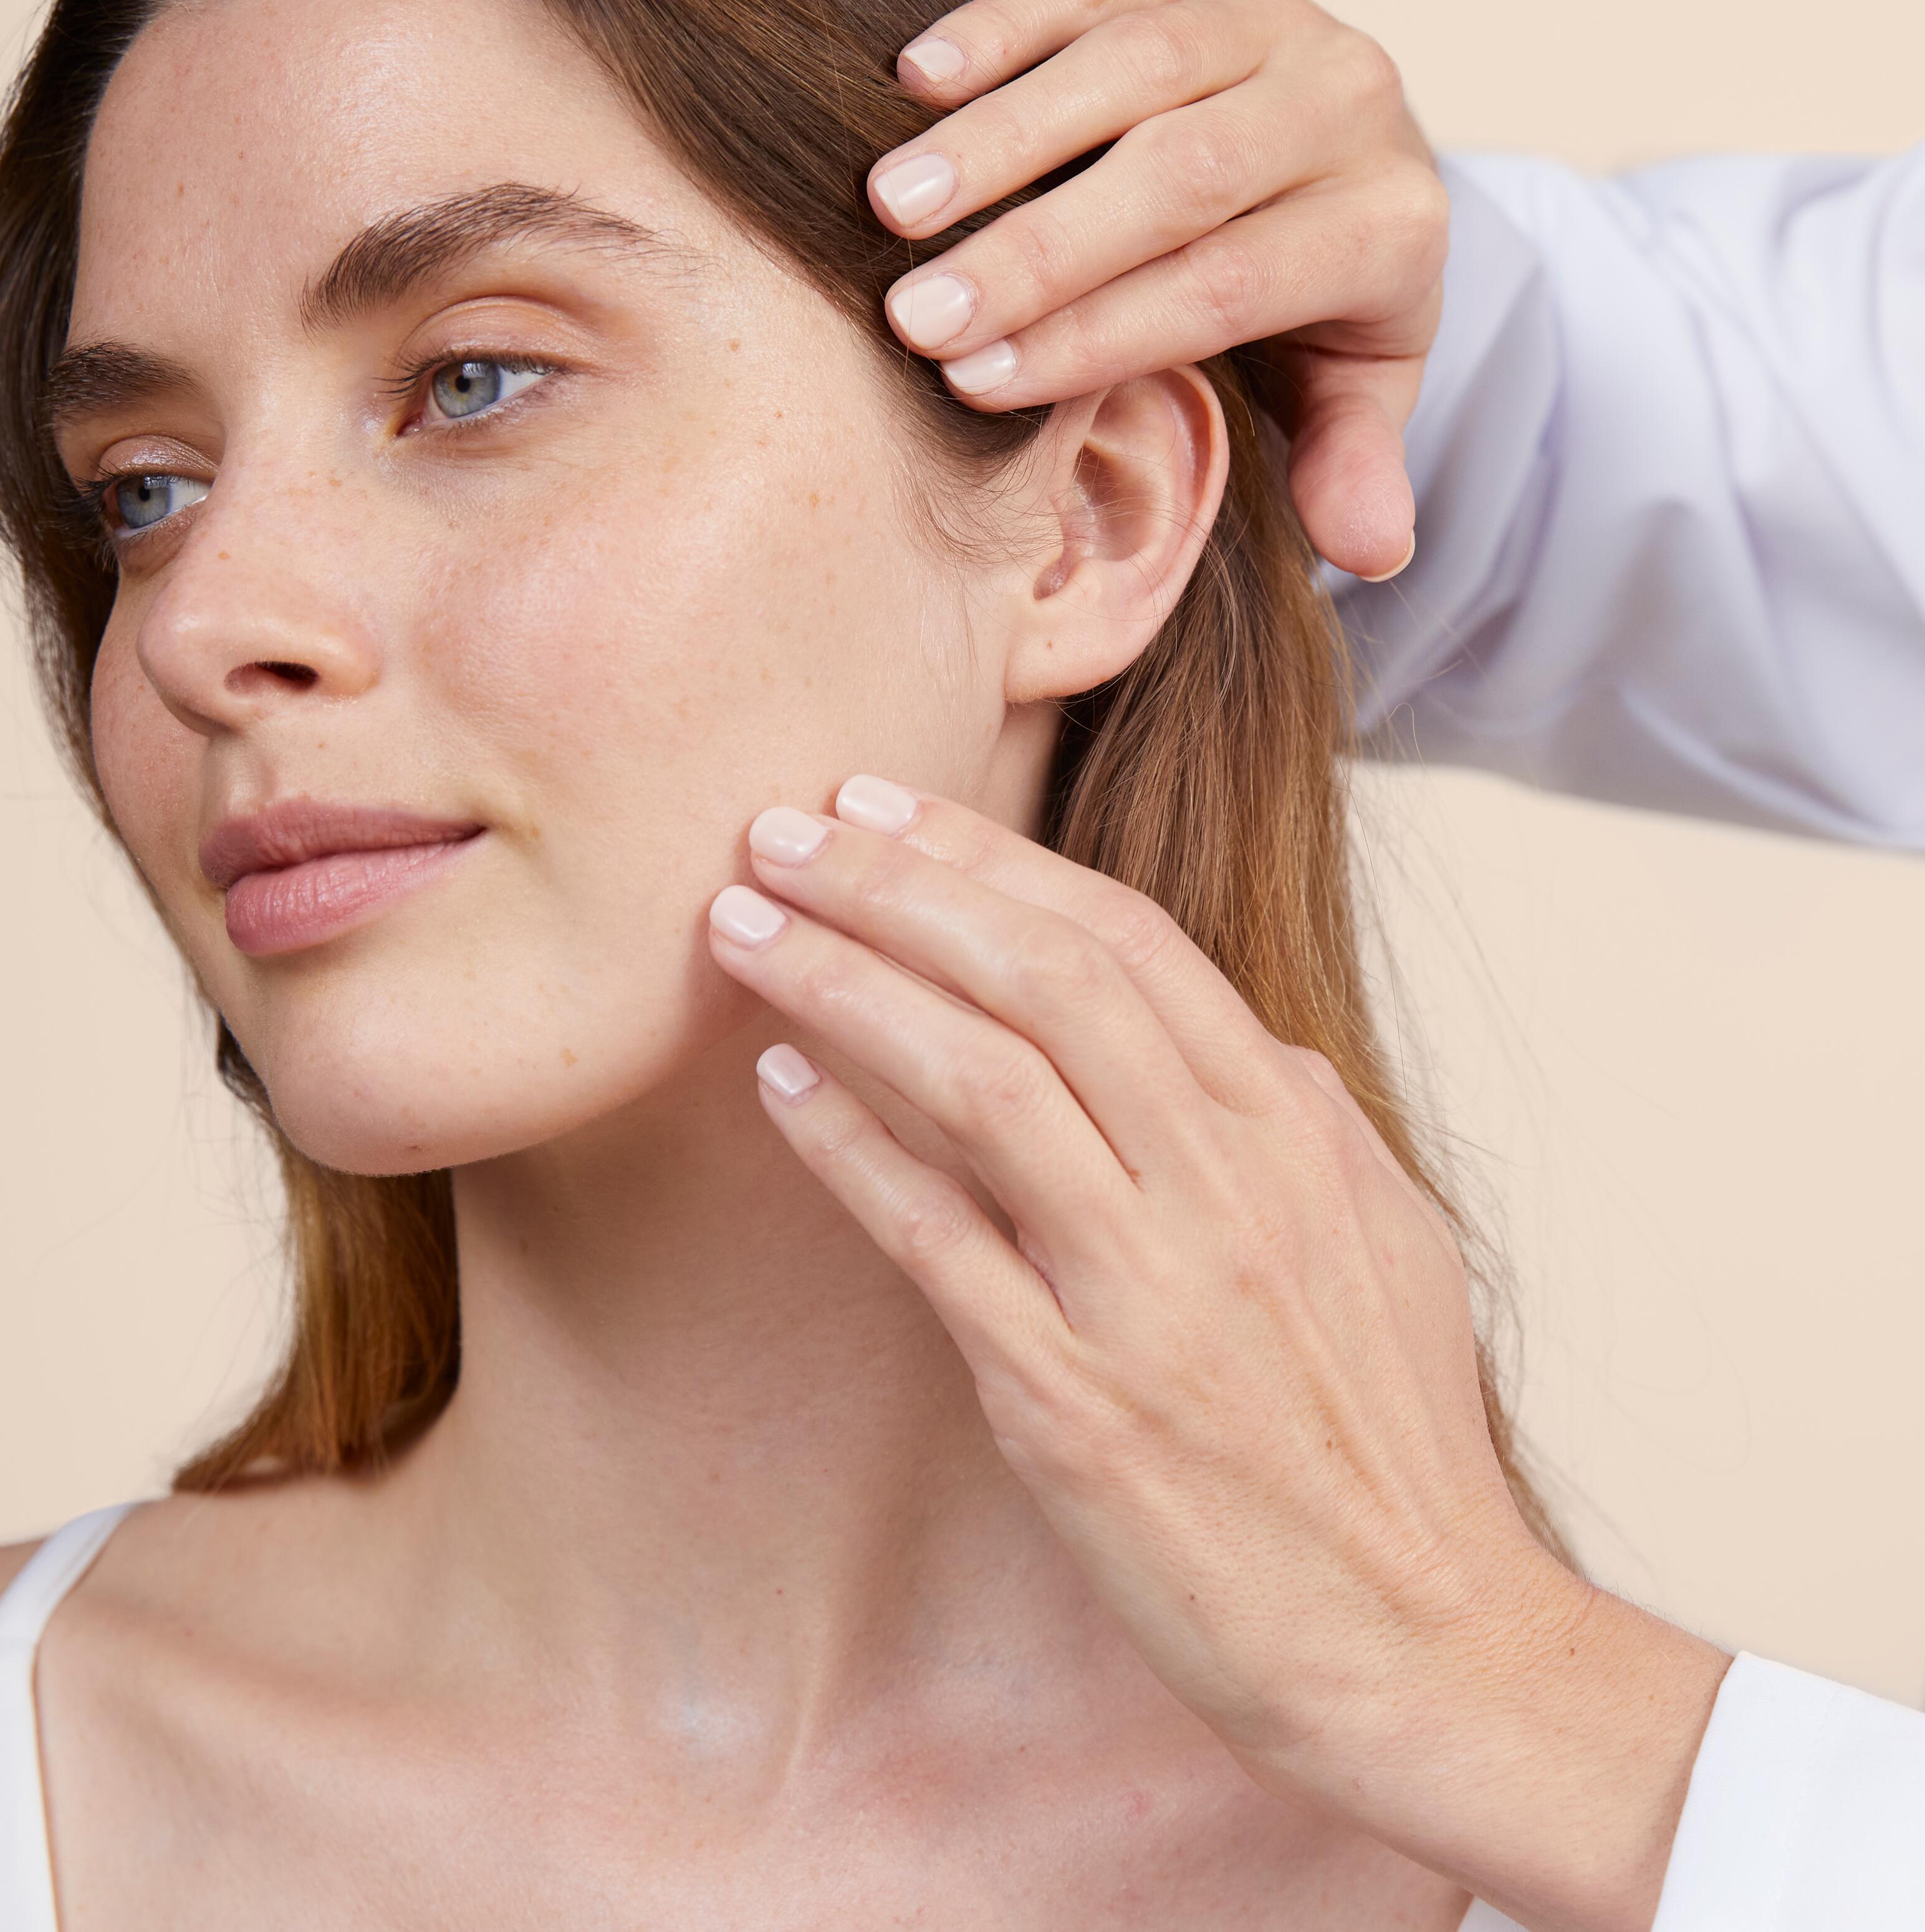 Cum să îți cunoști mai bine tenul predispus la acnee